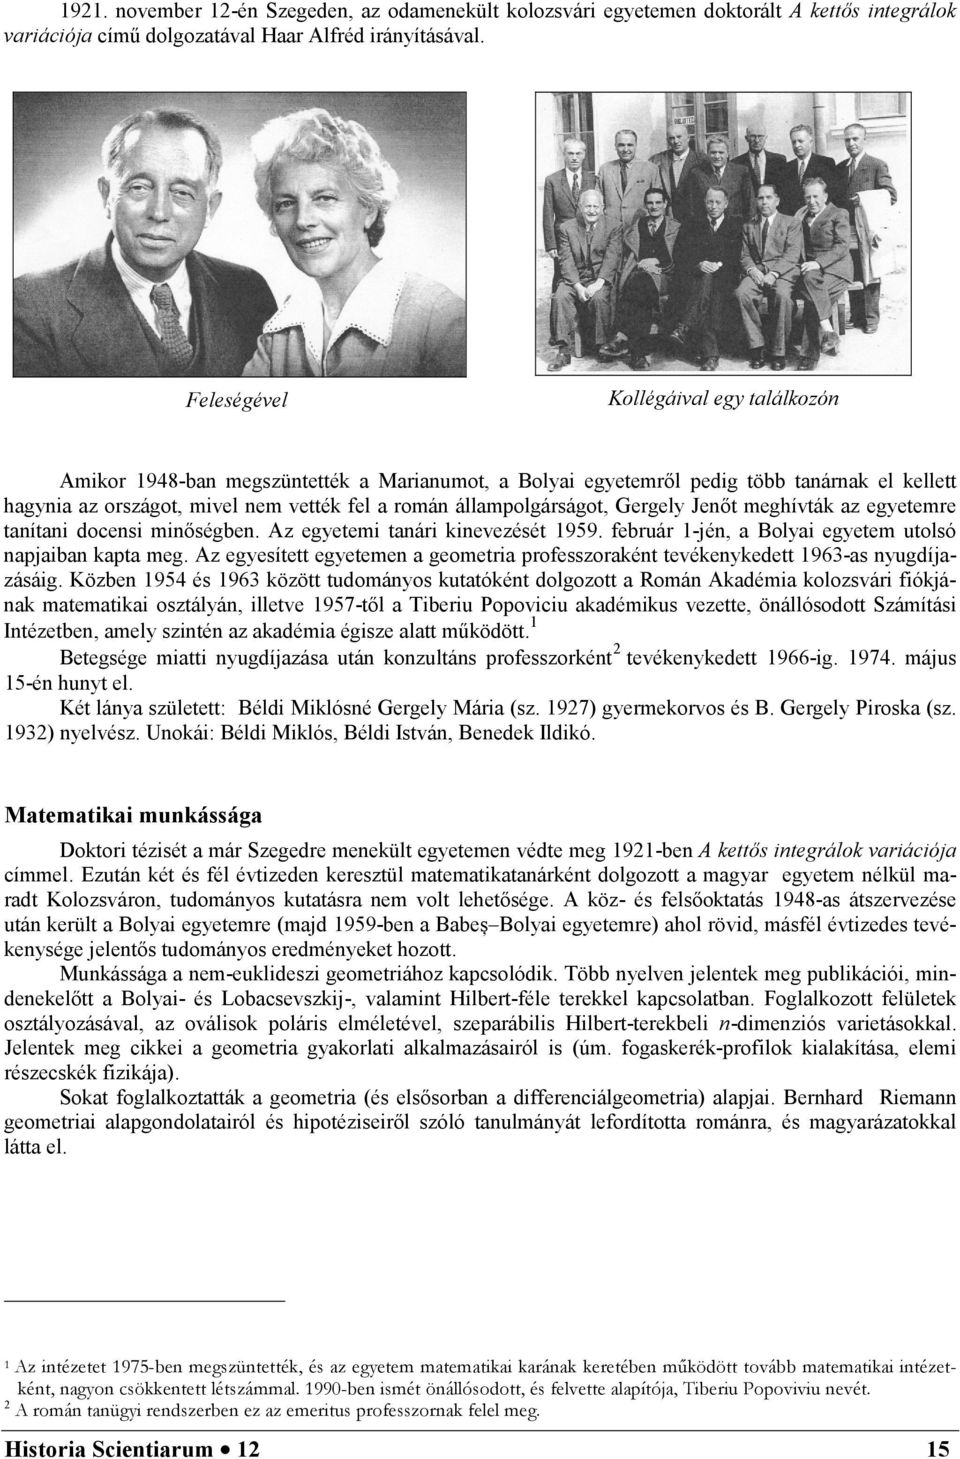 állampolgárságot, Gergely Jenőt meghívták az egyetemre tanítani docensi minőségben. Az egyetemi tanári kinevezését 1959. február 1-jén, a Bolyai egyetem utolsó napjaiban kapta meg.